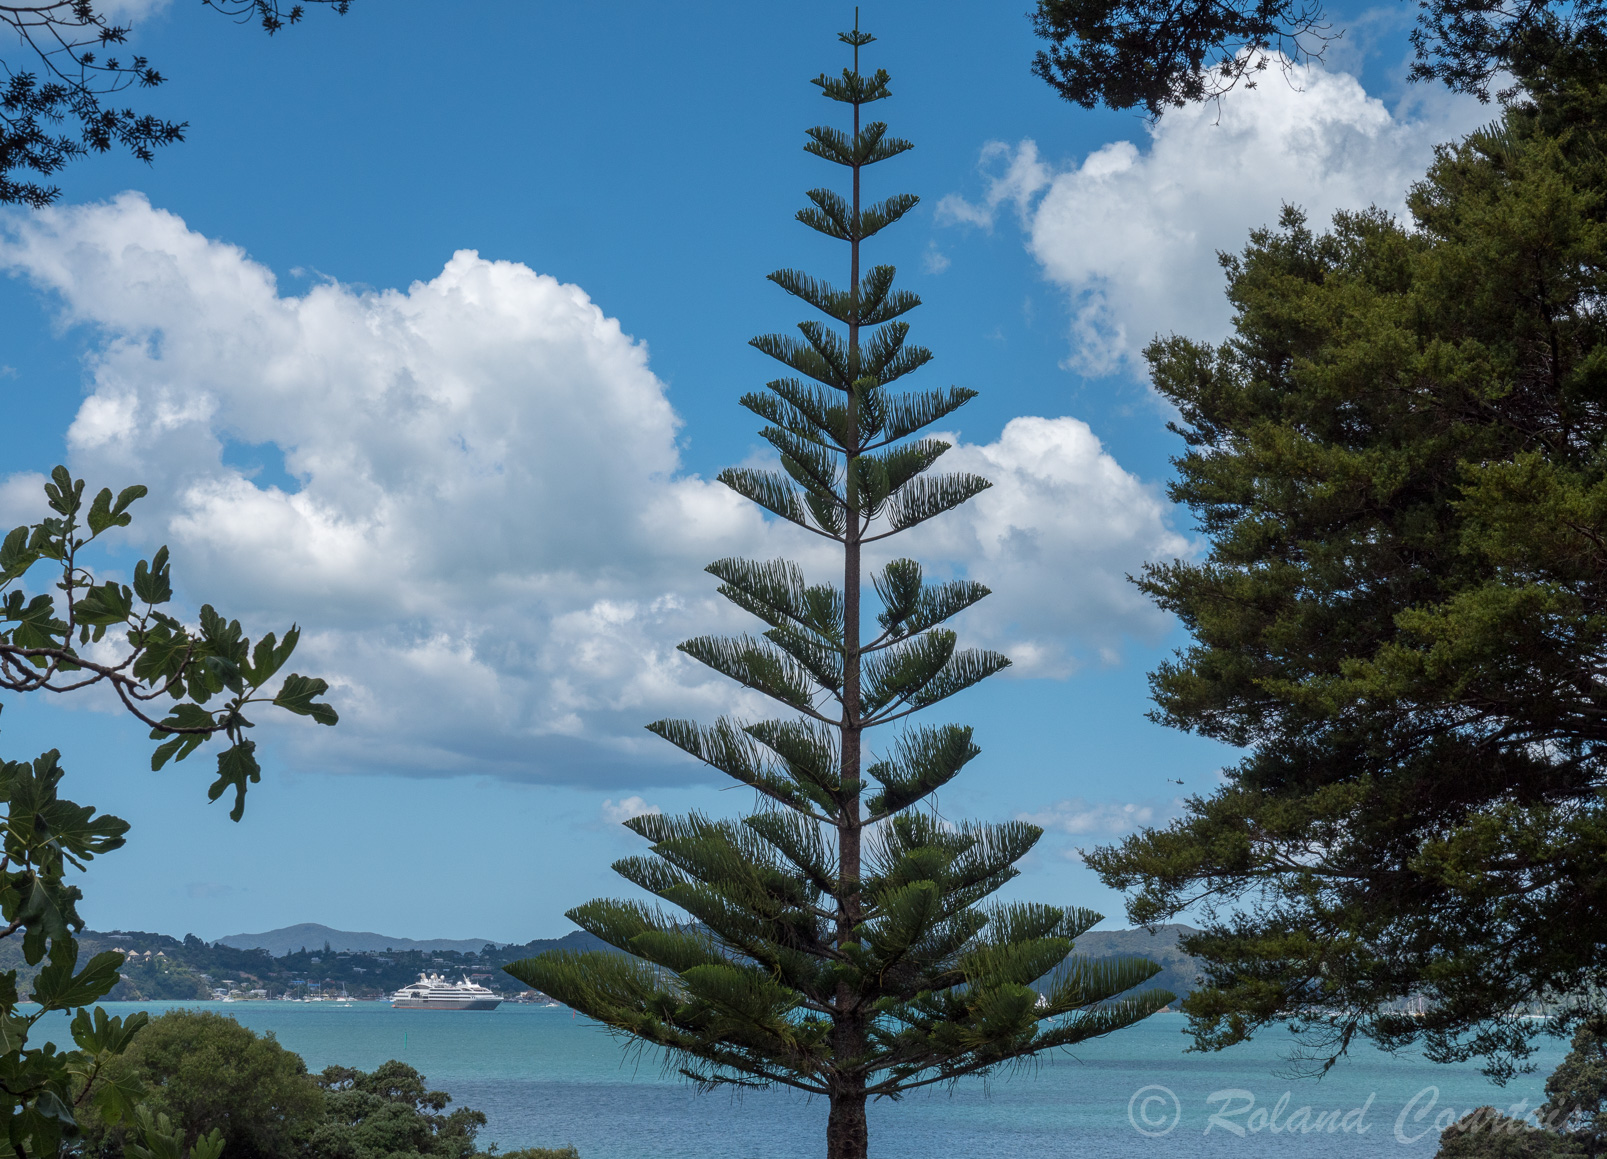 Le site du Traité de Waitangi est entouré d'un beau parc en bordure de la baie des Îles